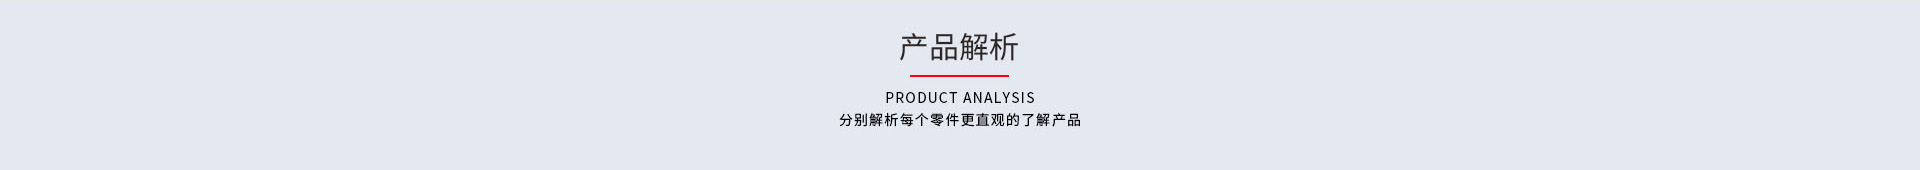 产品分析